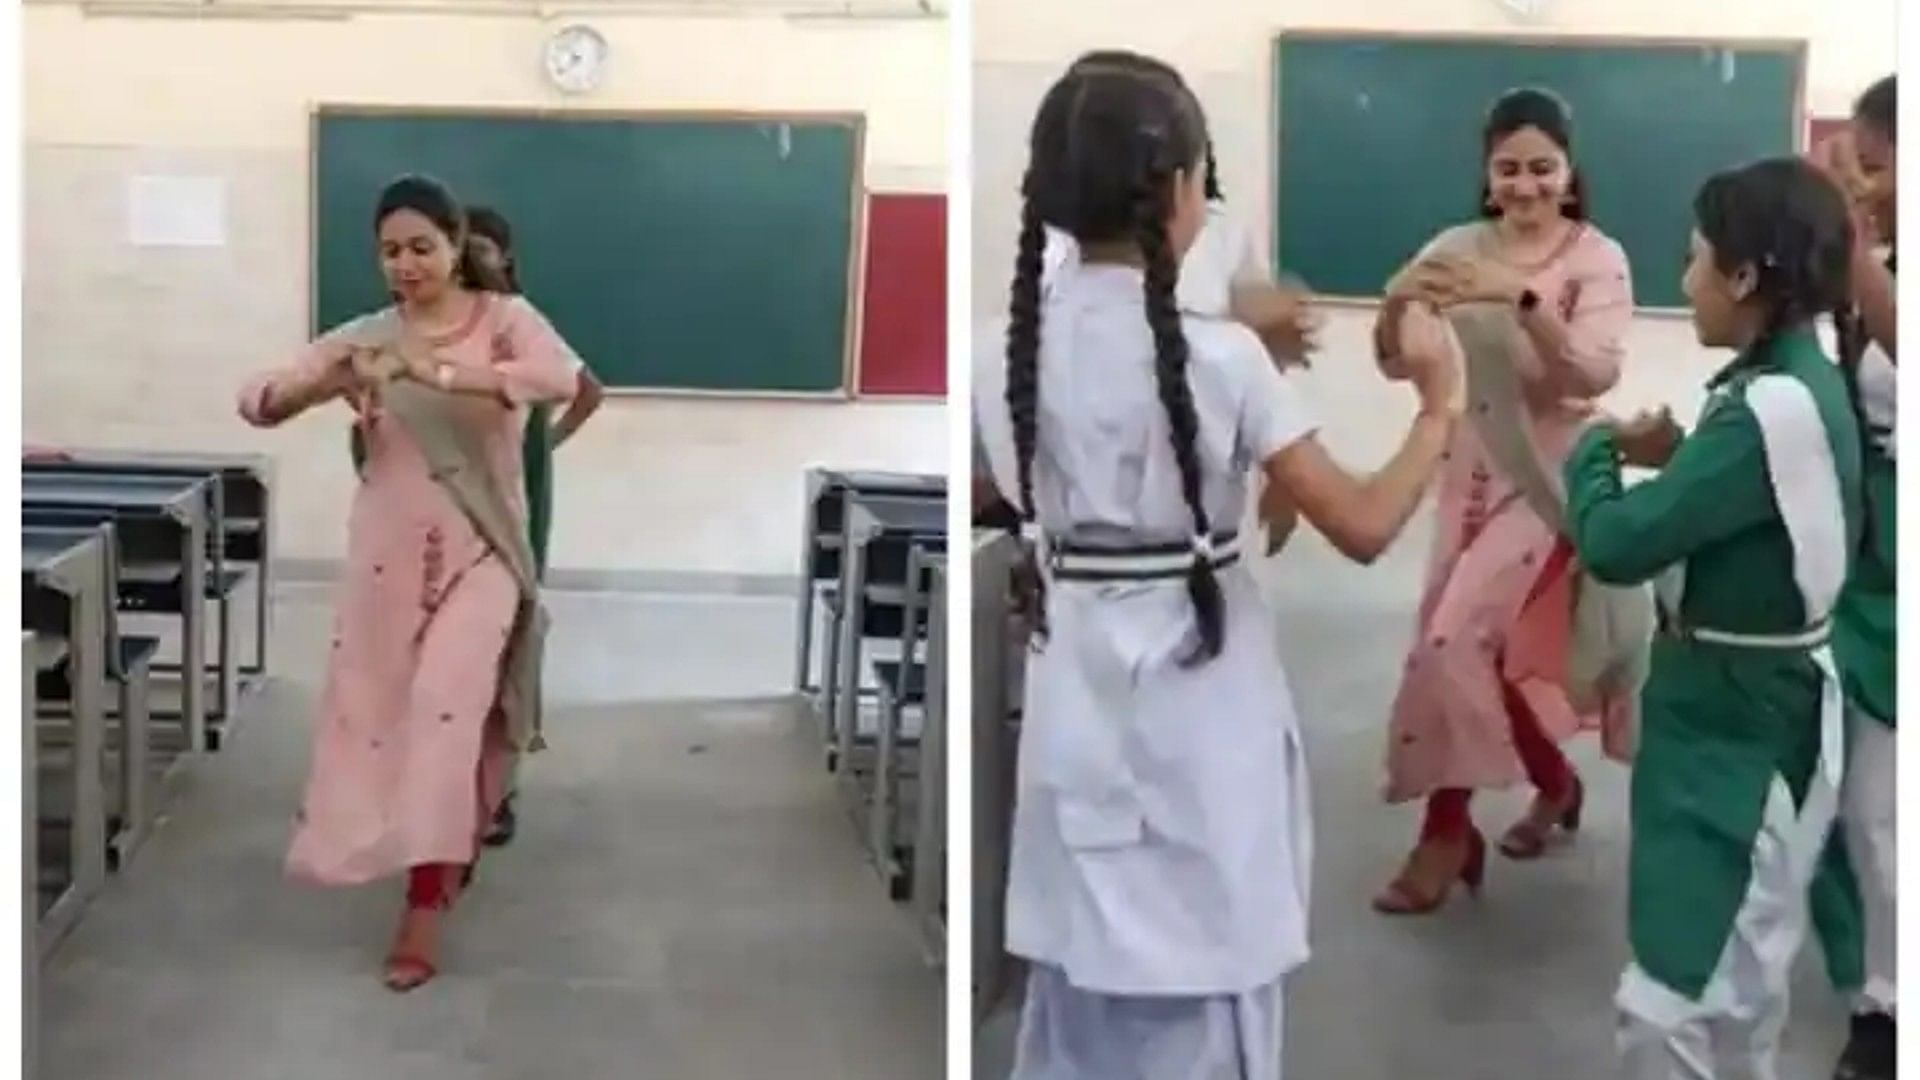 Trending News: टीजर और स्टूडेंट के इस डांस वीडियो ने जीता लोगों का दिल, 'झुमका बरेली वाला' गाने पर मचाया धमाल   Teacher Students Dance Viral Video Teacher and student danced on the song 'Jhumka Bareli Wala'